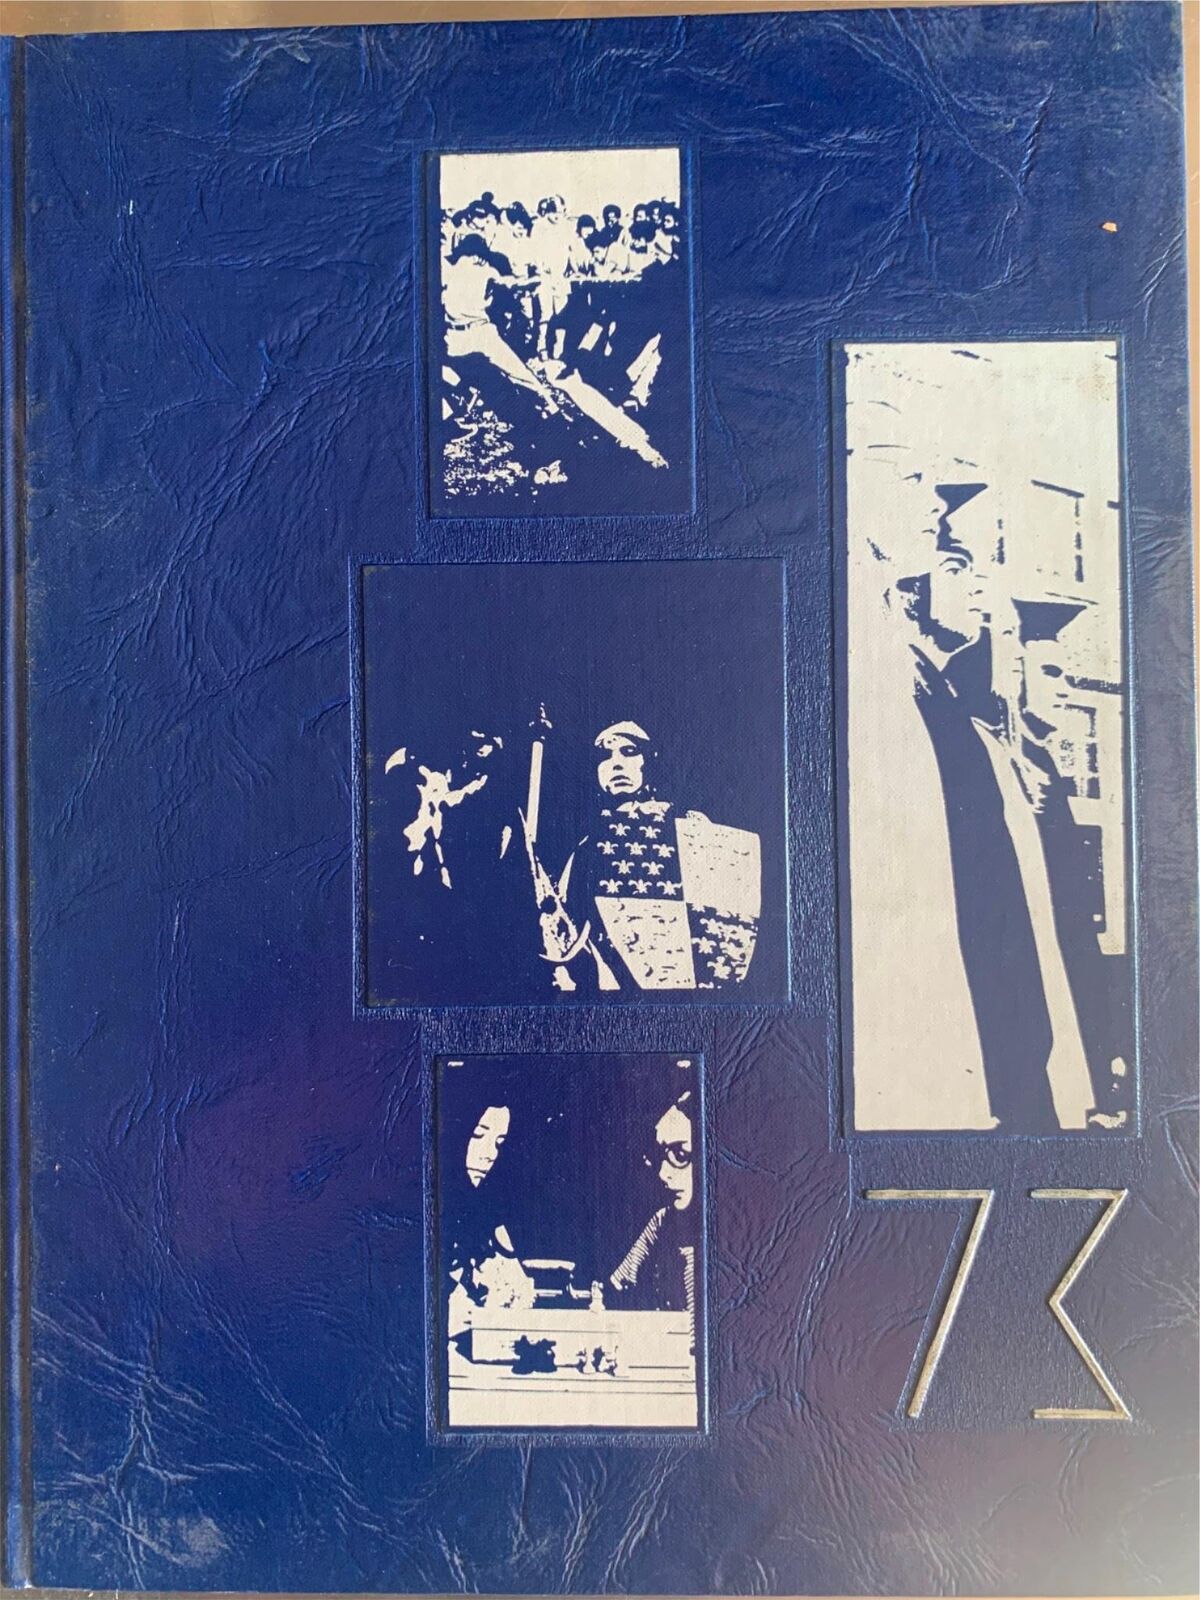 YEARBOOK 1973 Vol. 4   Sussex Central High School   Georgetown DE